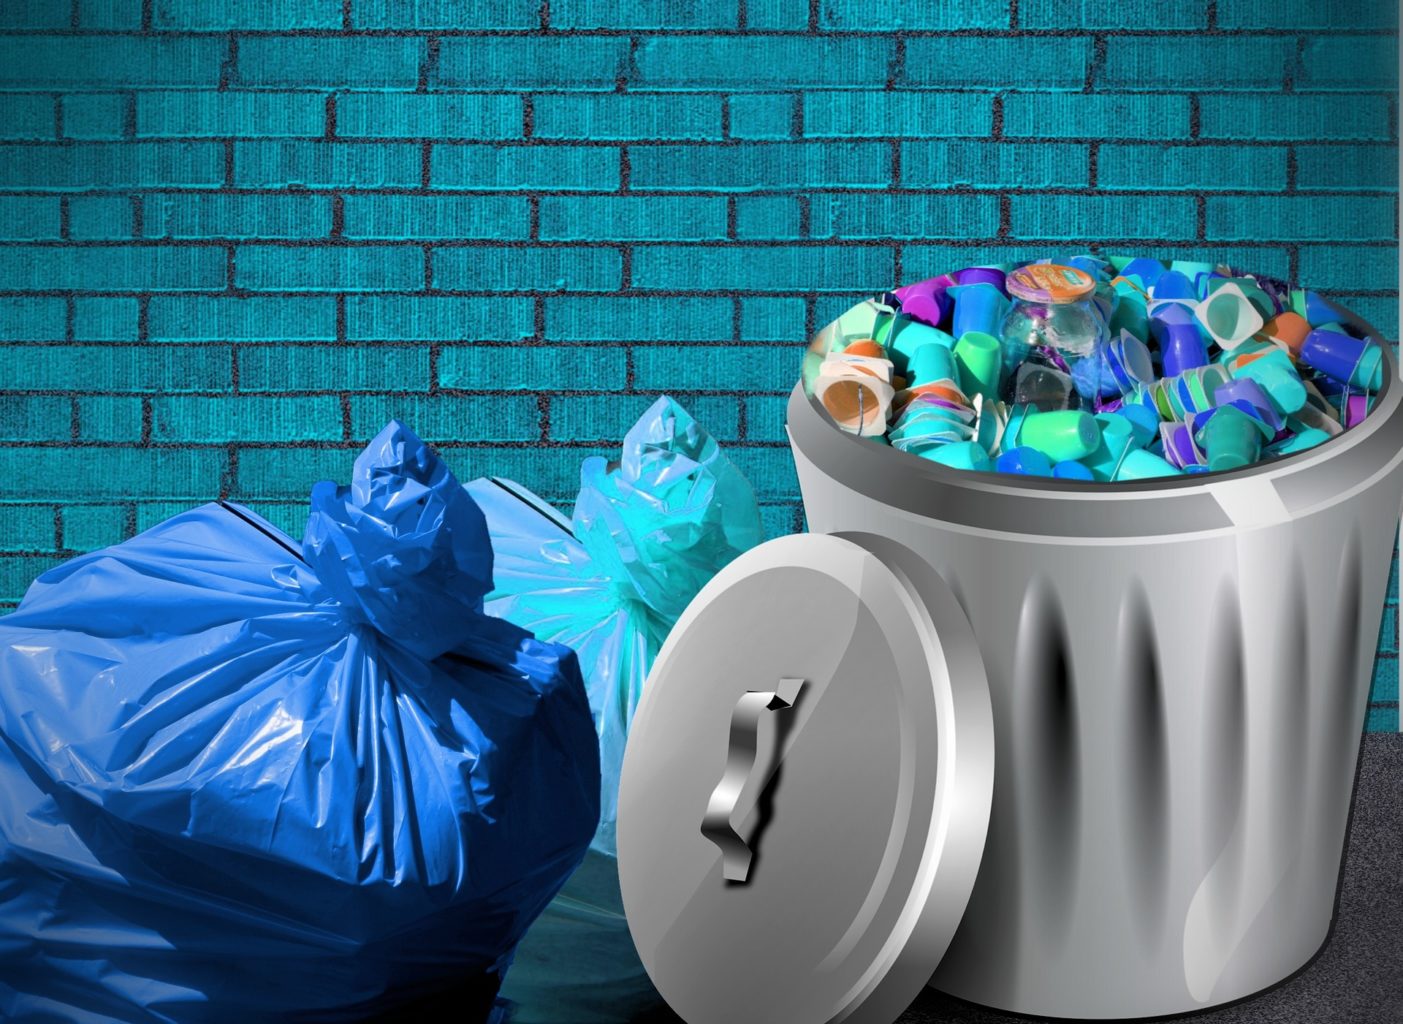 Comment la ville de demain va optimiser la gestion des déchets